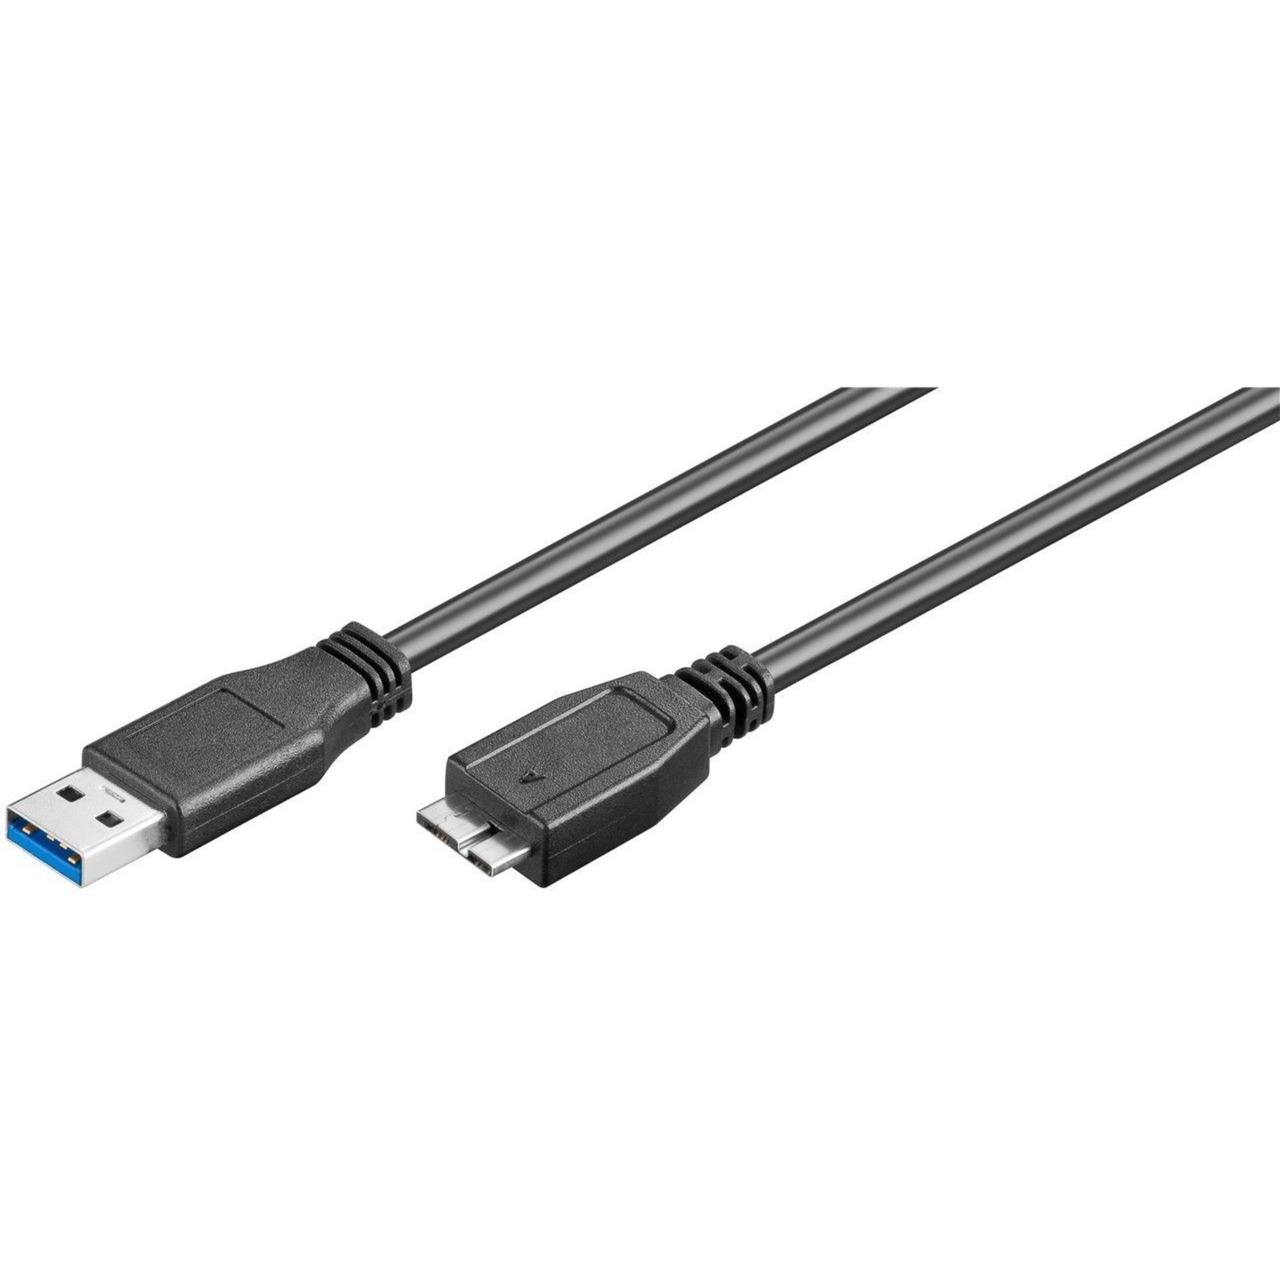 Image of Alternate - SuperSpeed Kabel USB-A 3.0 Stecker> USB 3.0-Micro-Stecker Typ B online einkaufen bei Alternate